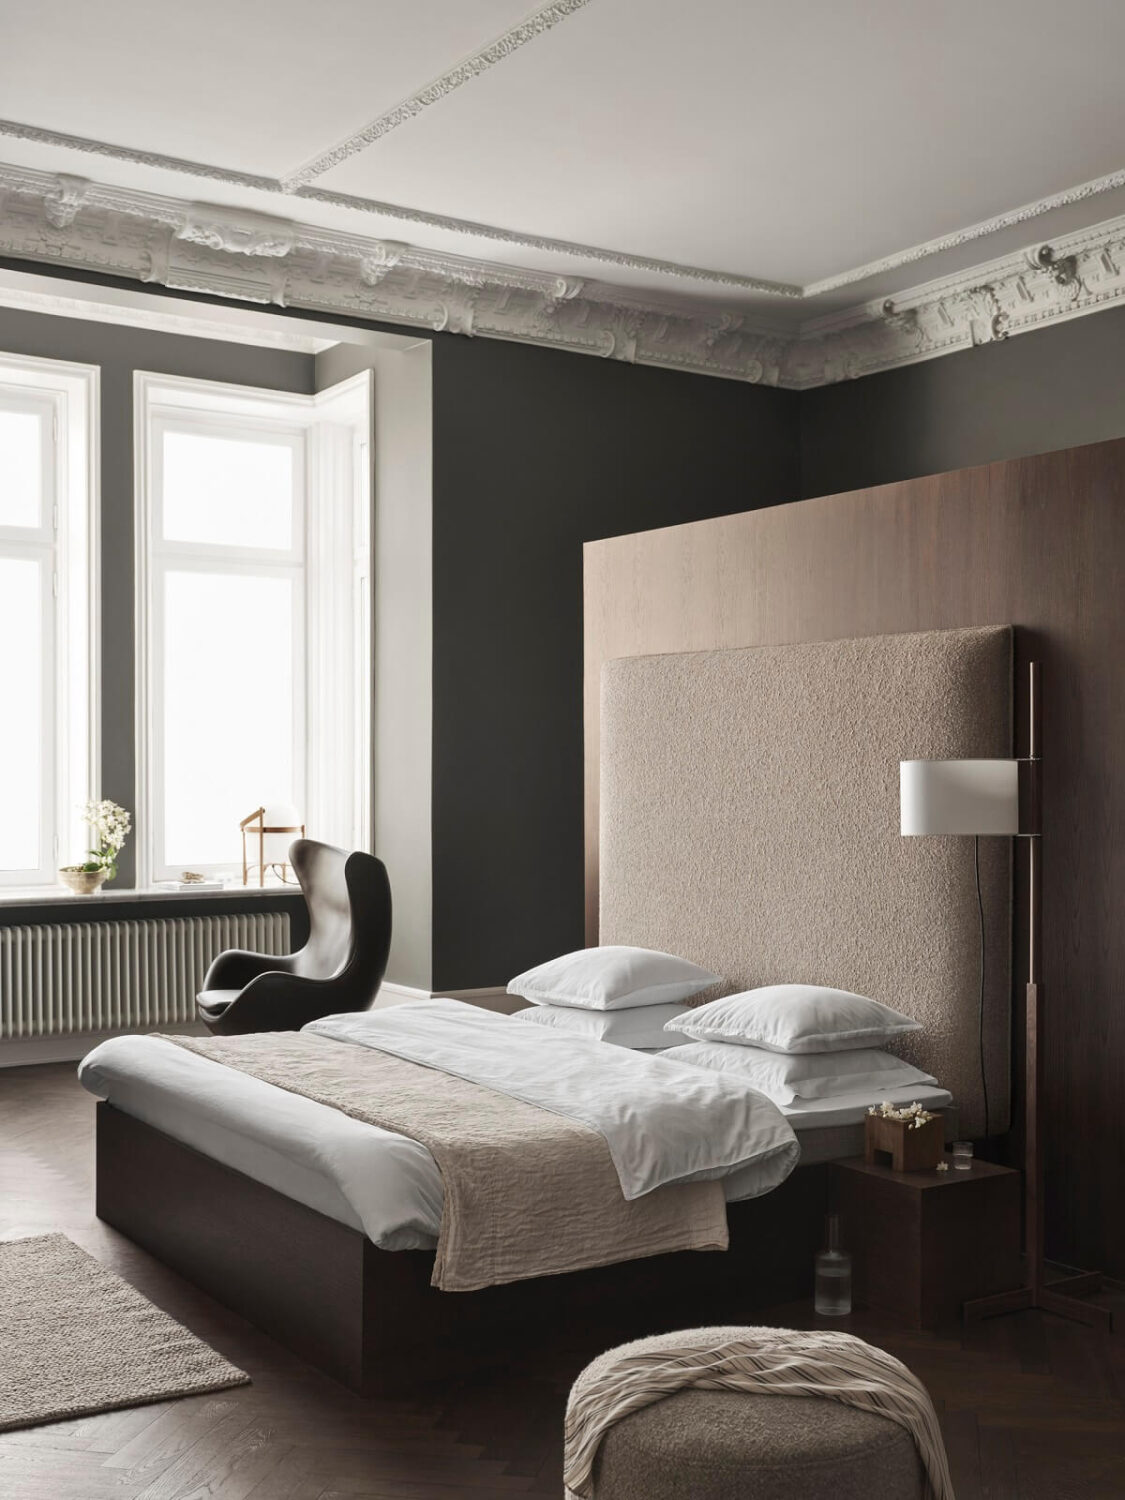 luxe-bedroom-interior-trends-nordroom